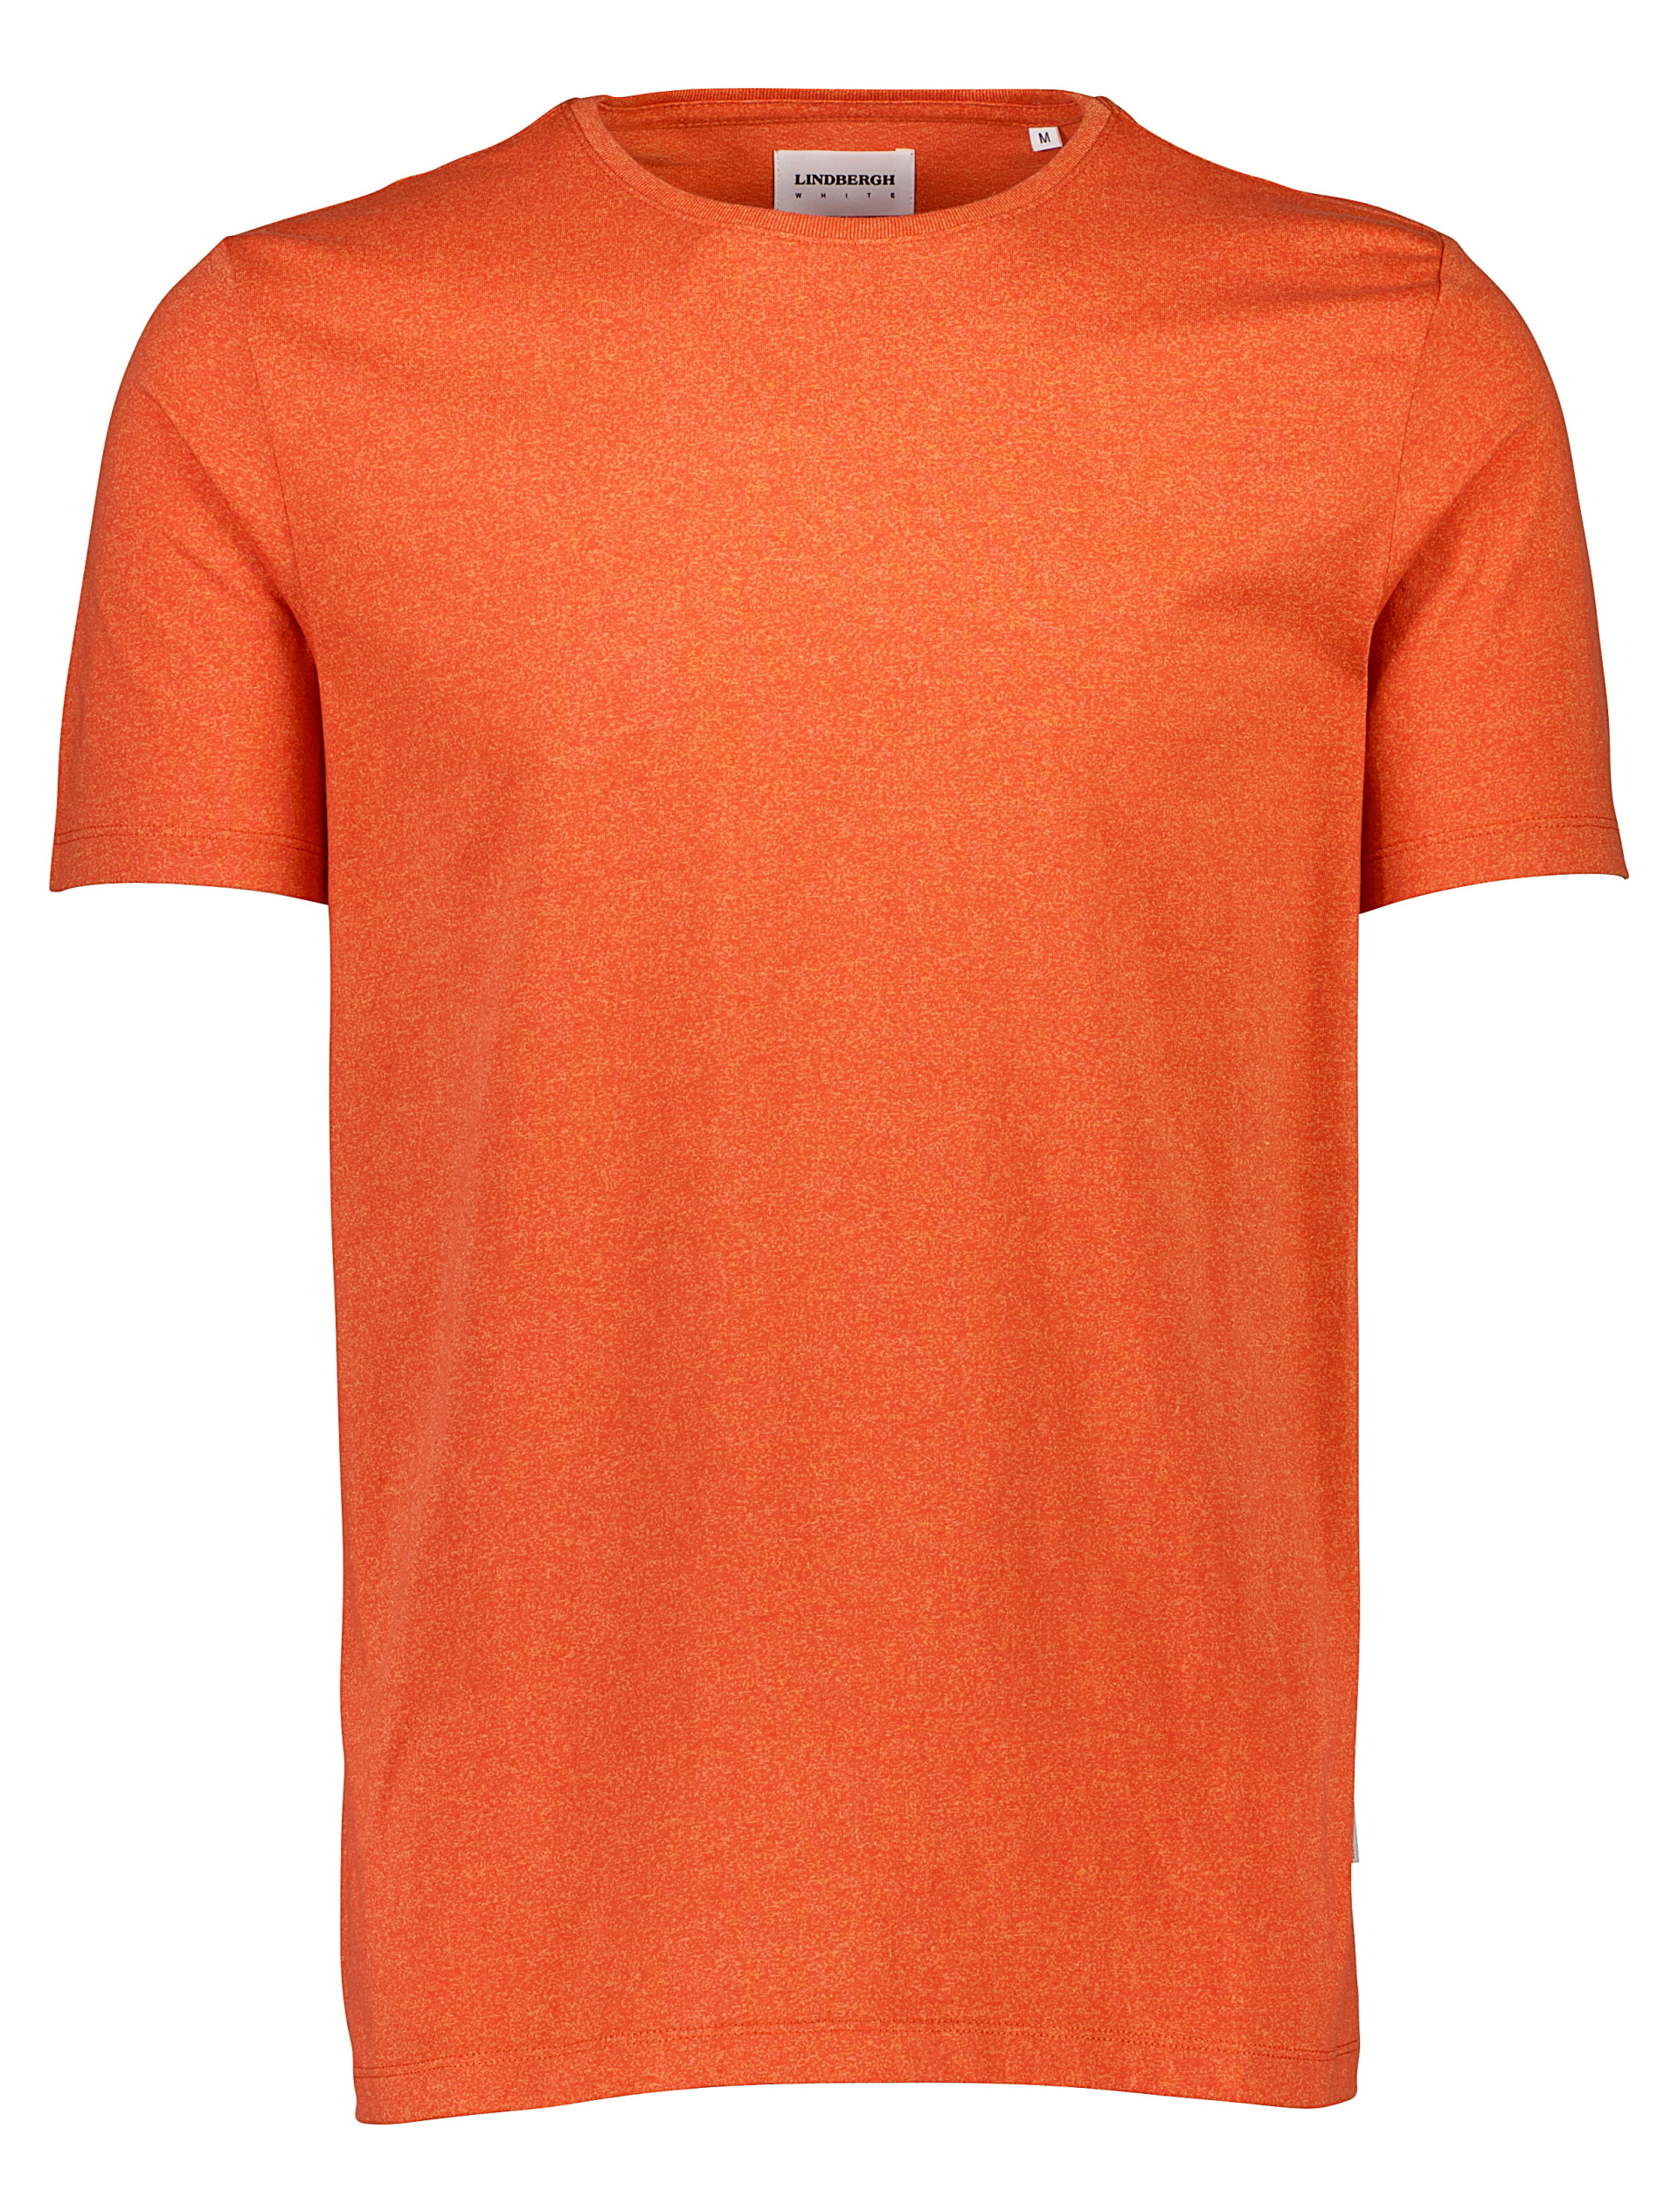 Lindbergh T-shirt rood / orange mix 123